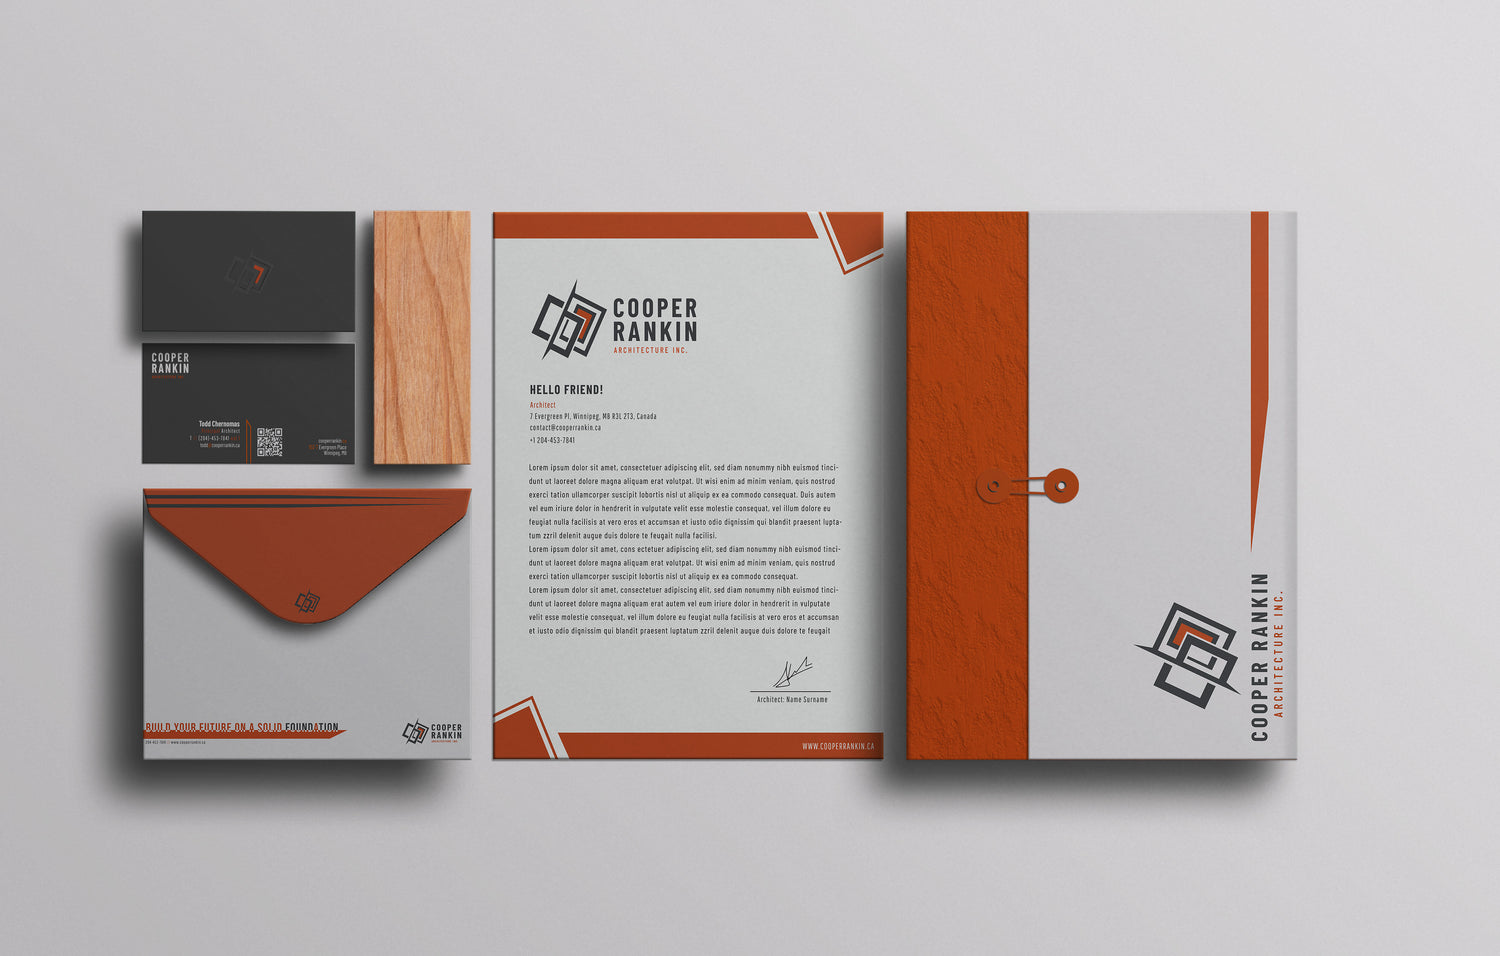 Eleven Eleven's client cooper rankin architecture letter head concept